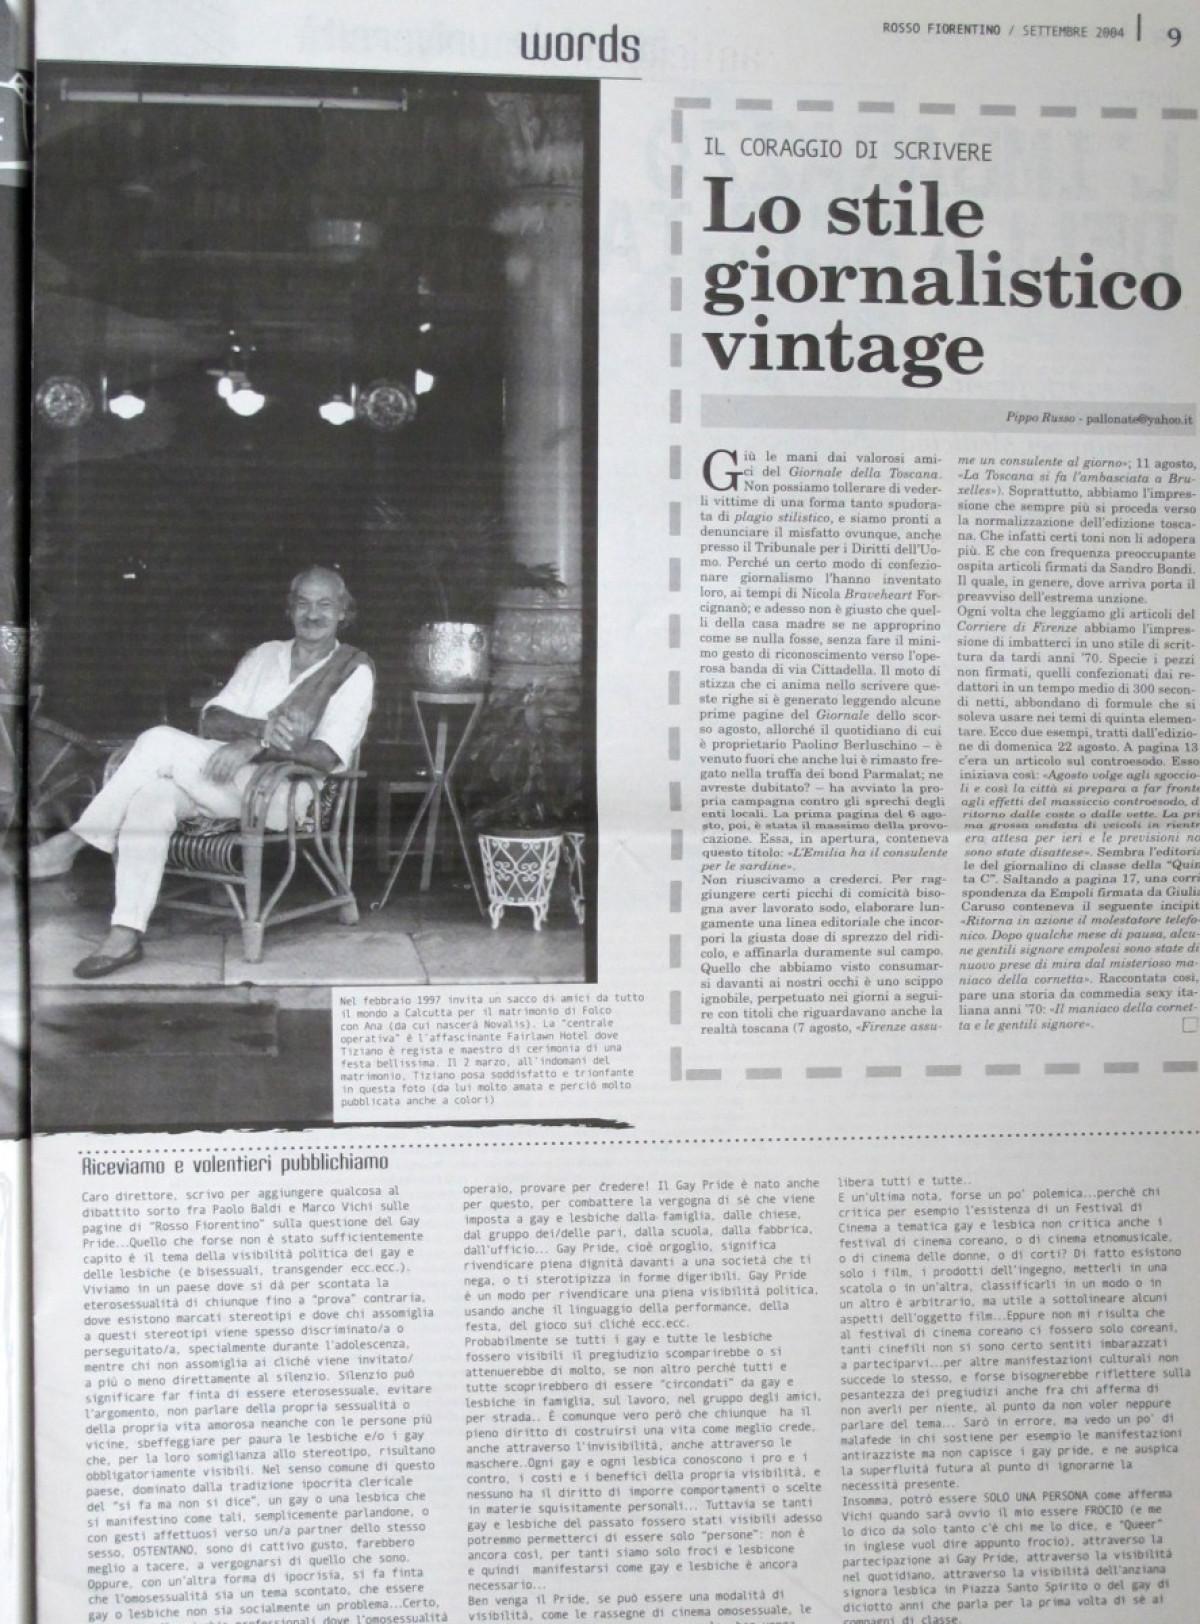 2004 - A man is dead - Rosso Fiorentino